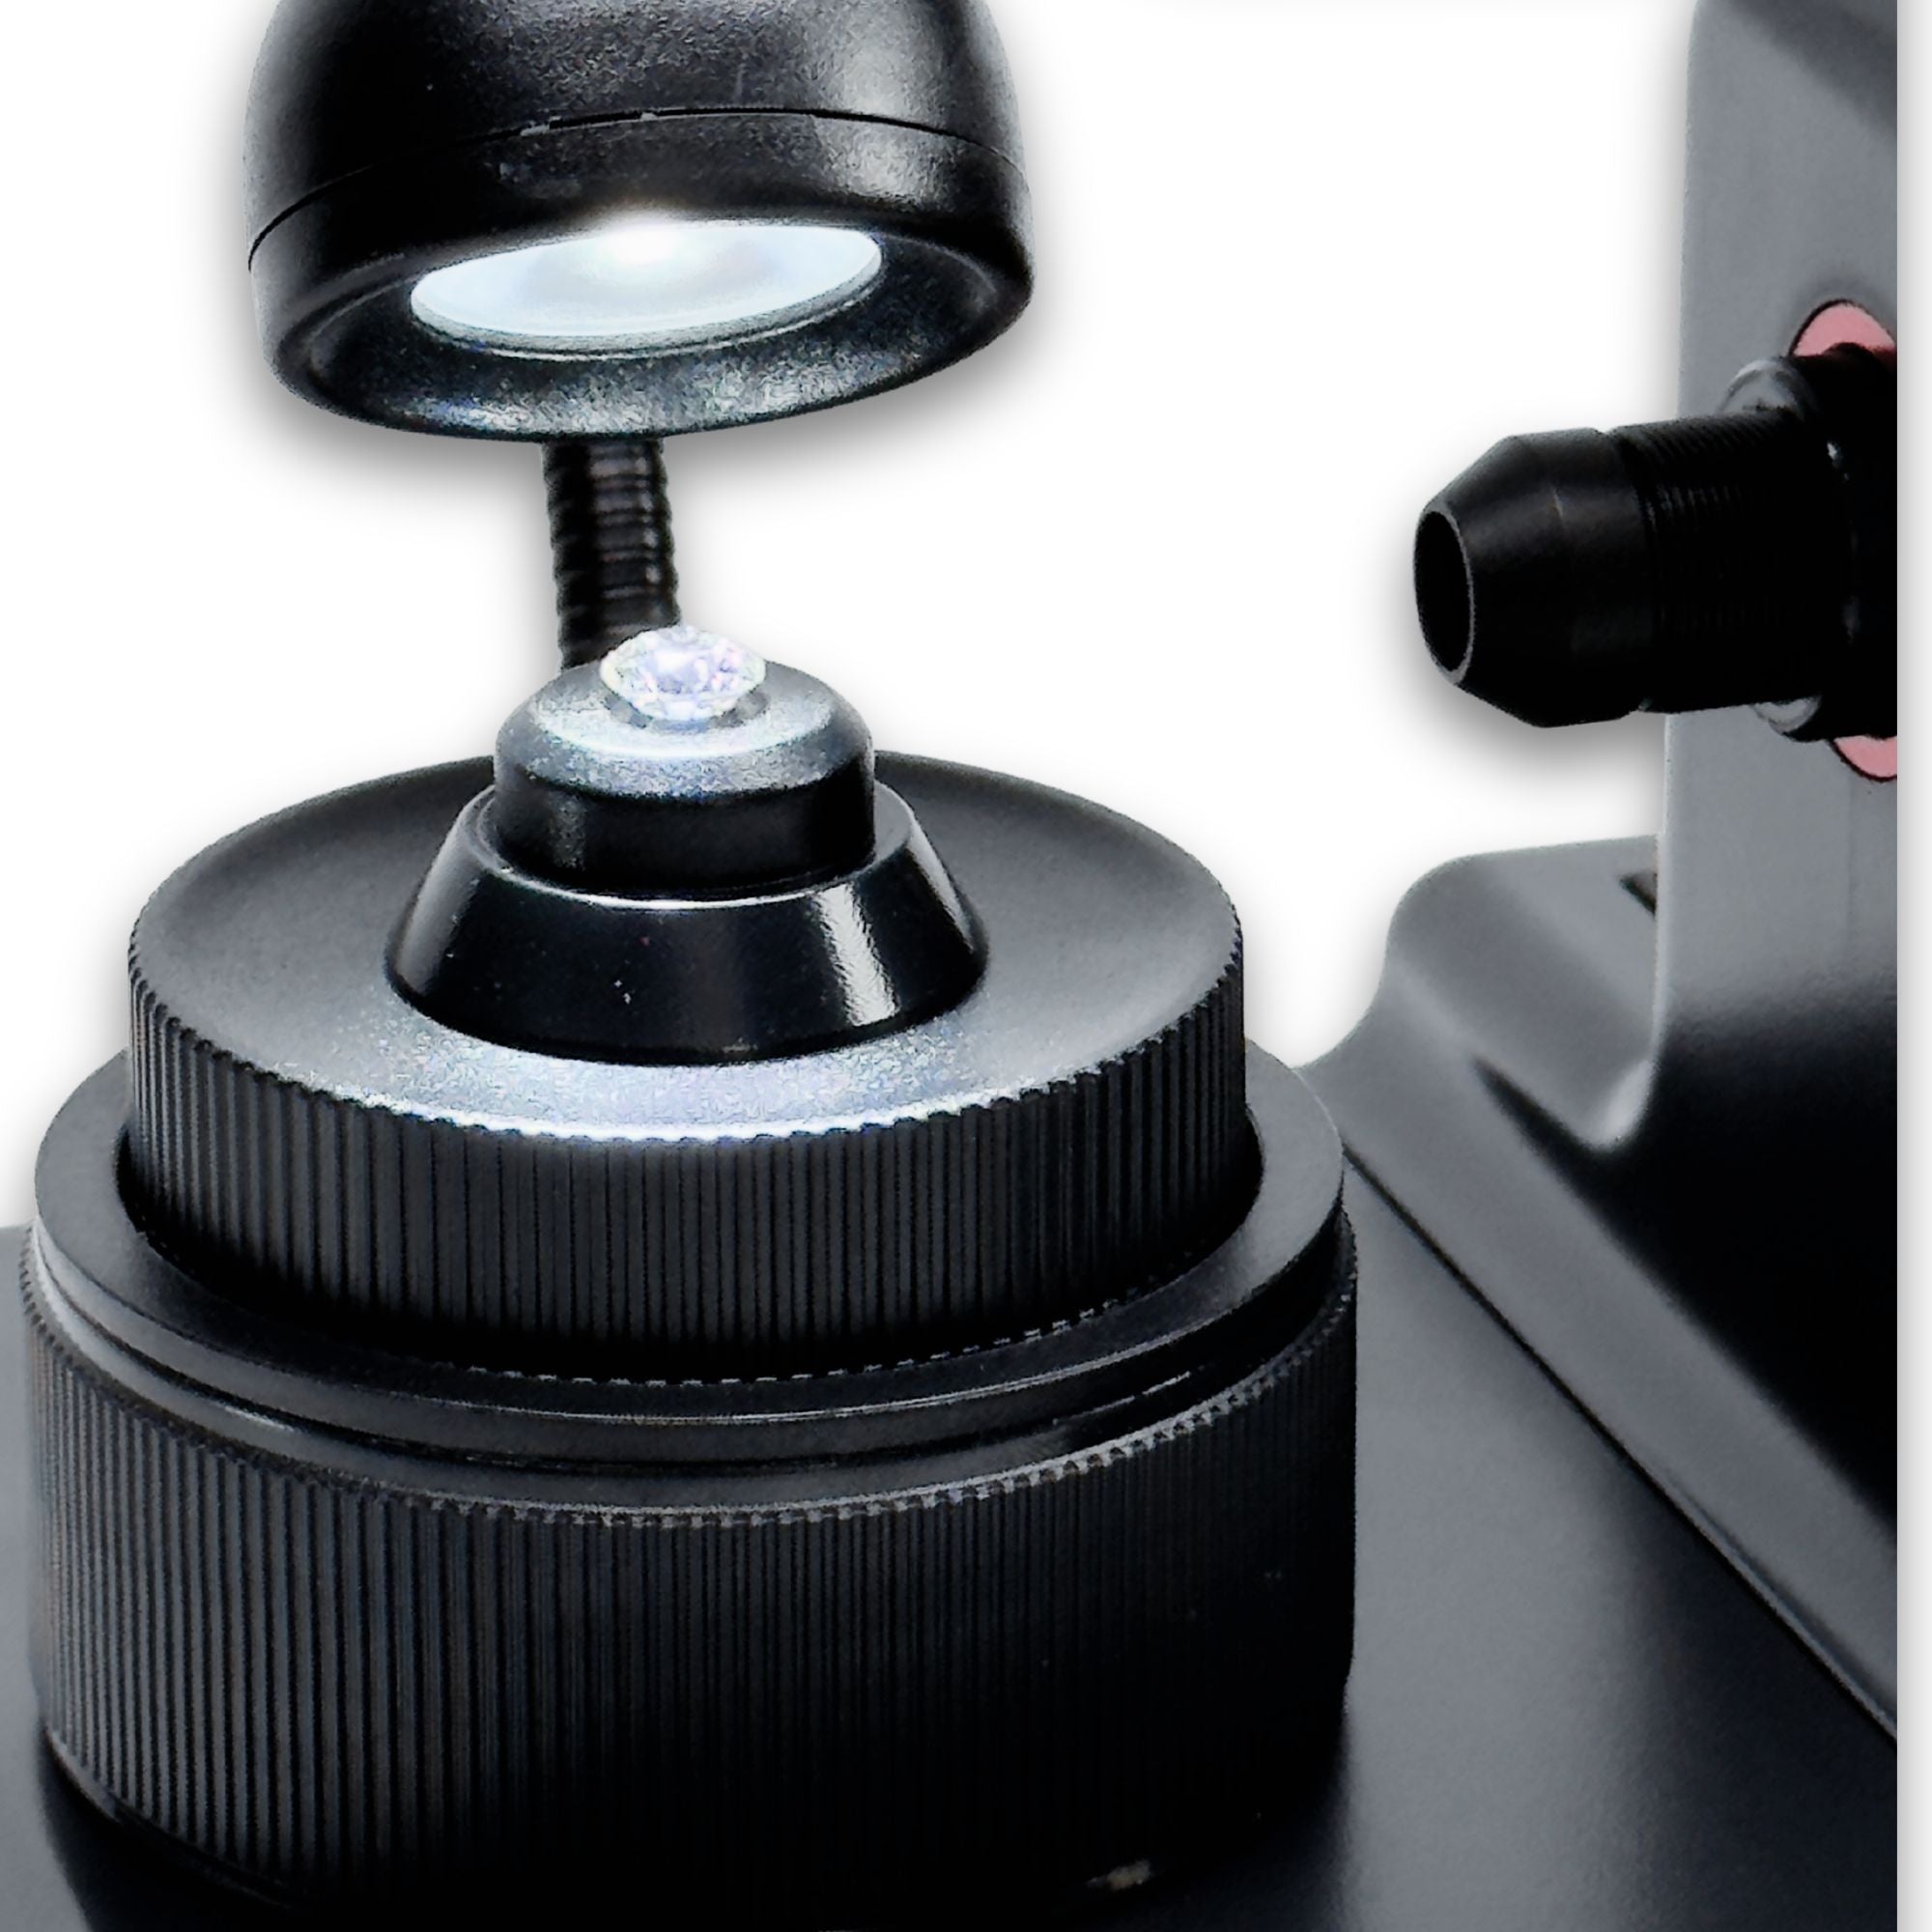 Digitales Mikroskop zur Anzeige einer Laserbezeichnung auf einem Diamanten